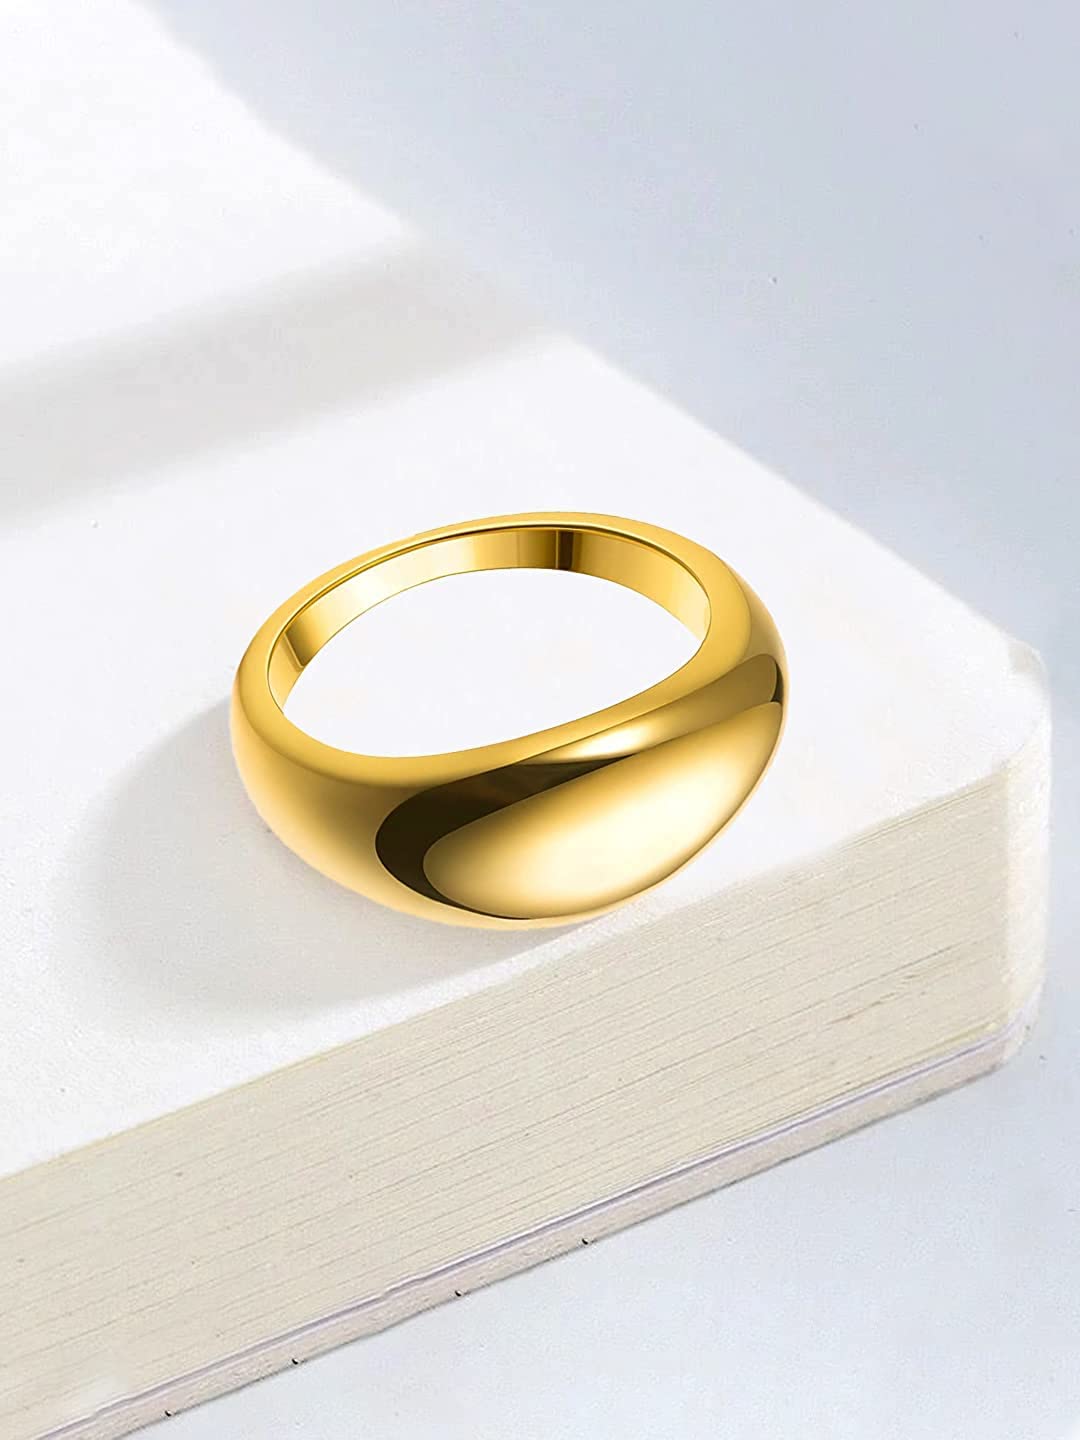 Custom Name Ring, Gold Name Ring, Prince Crown Name Ring, Wedding Gift,  Custom Engraved Ring, Personalized Name Rings, Gift for Her - Etsy |  Engraved rings, Name rings, Hand stamped ring